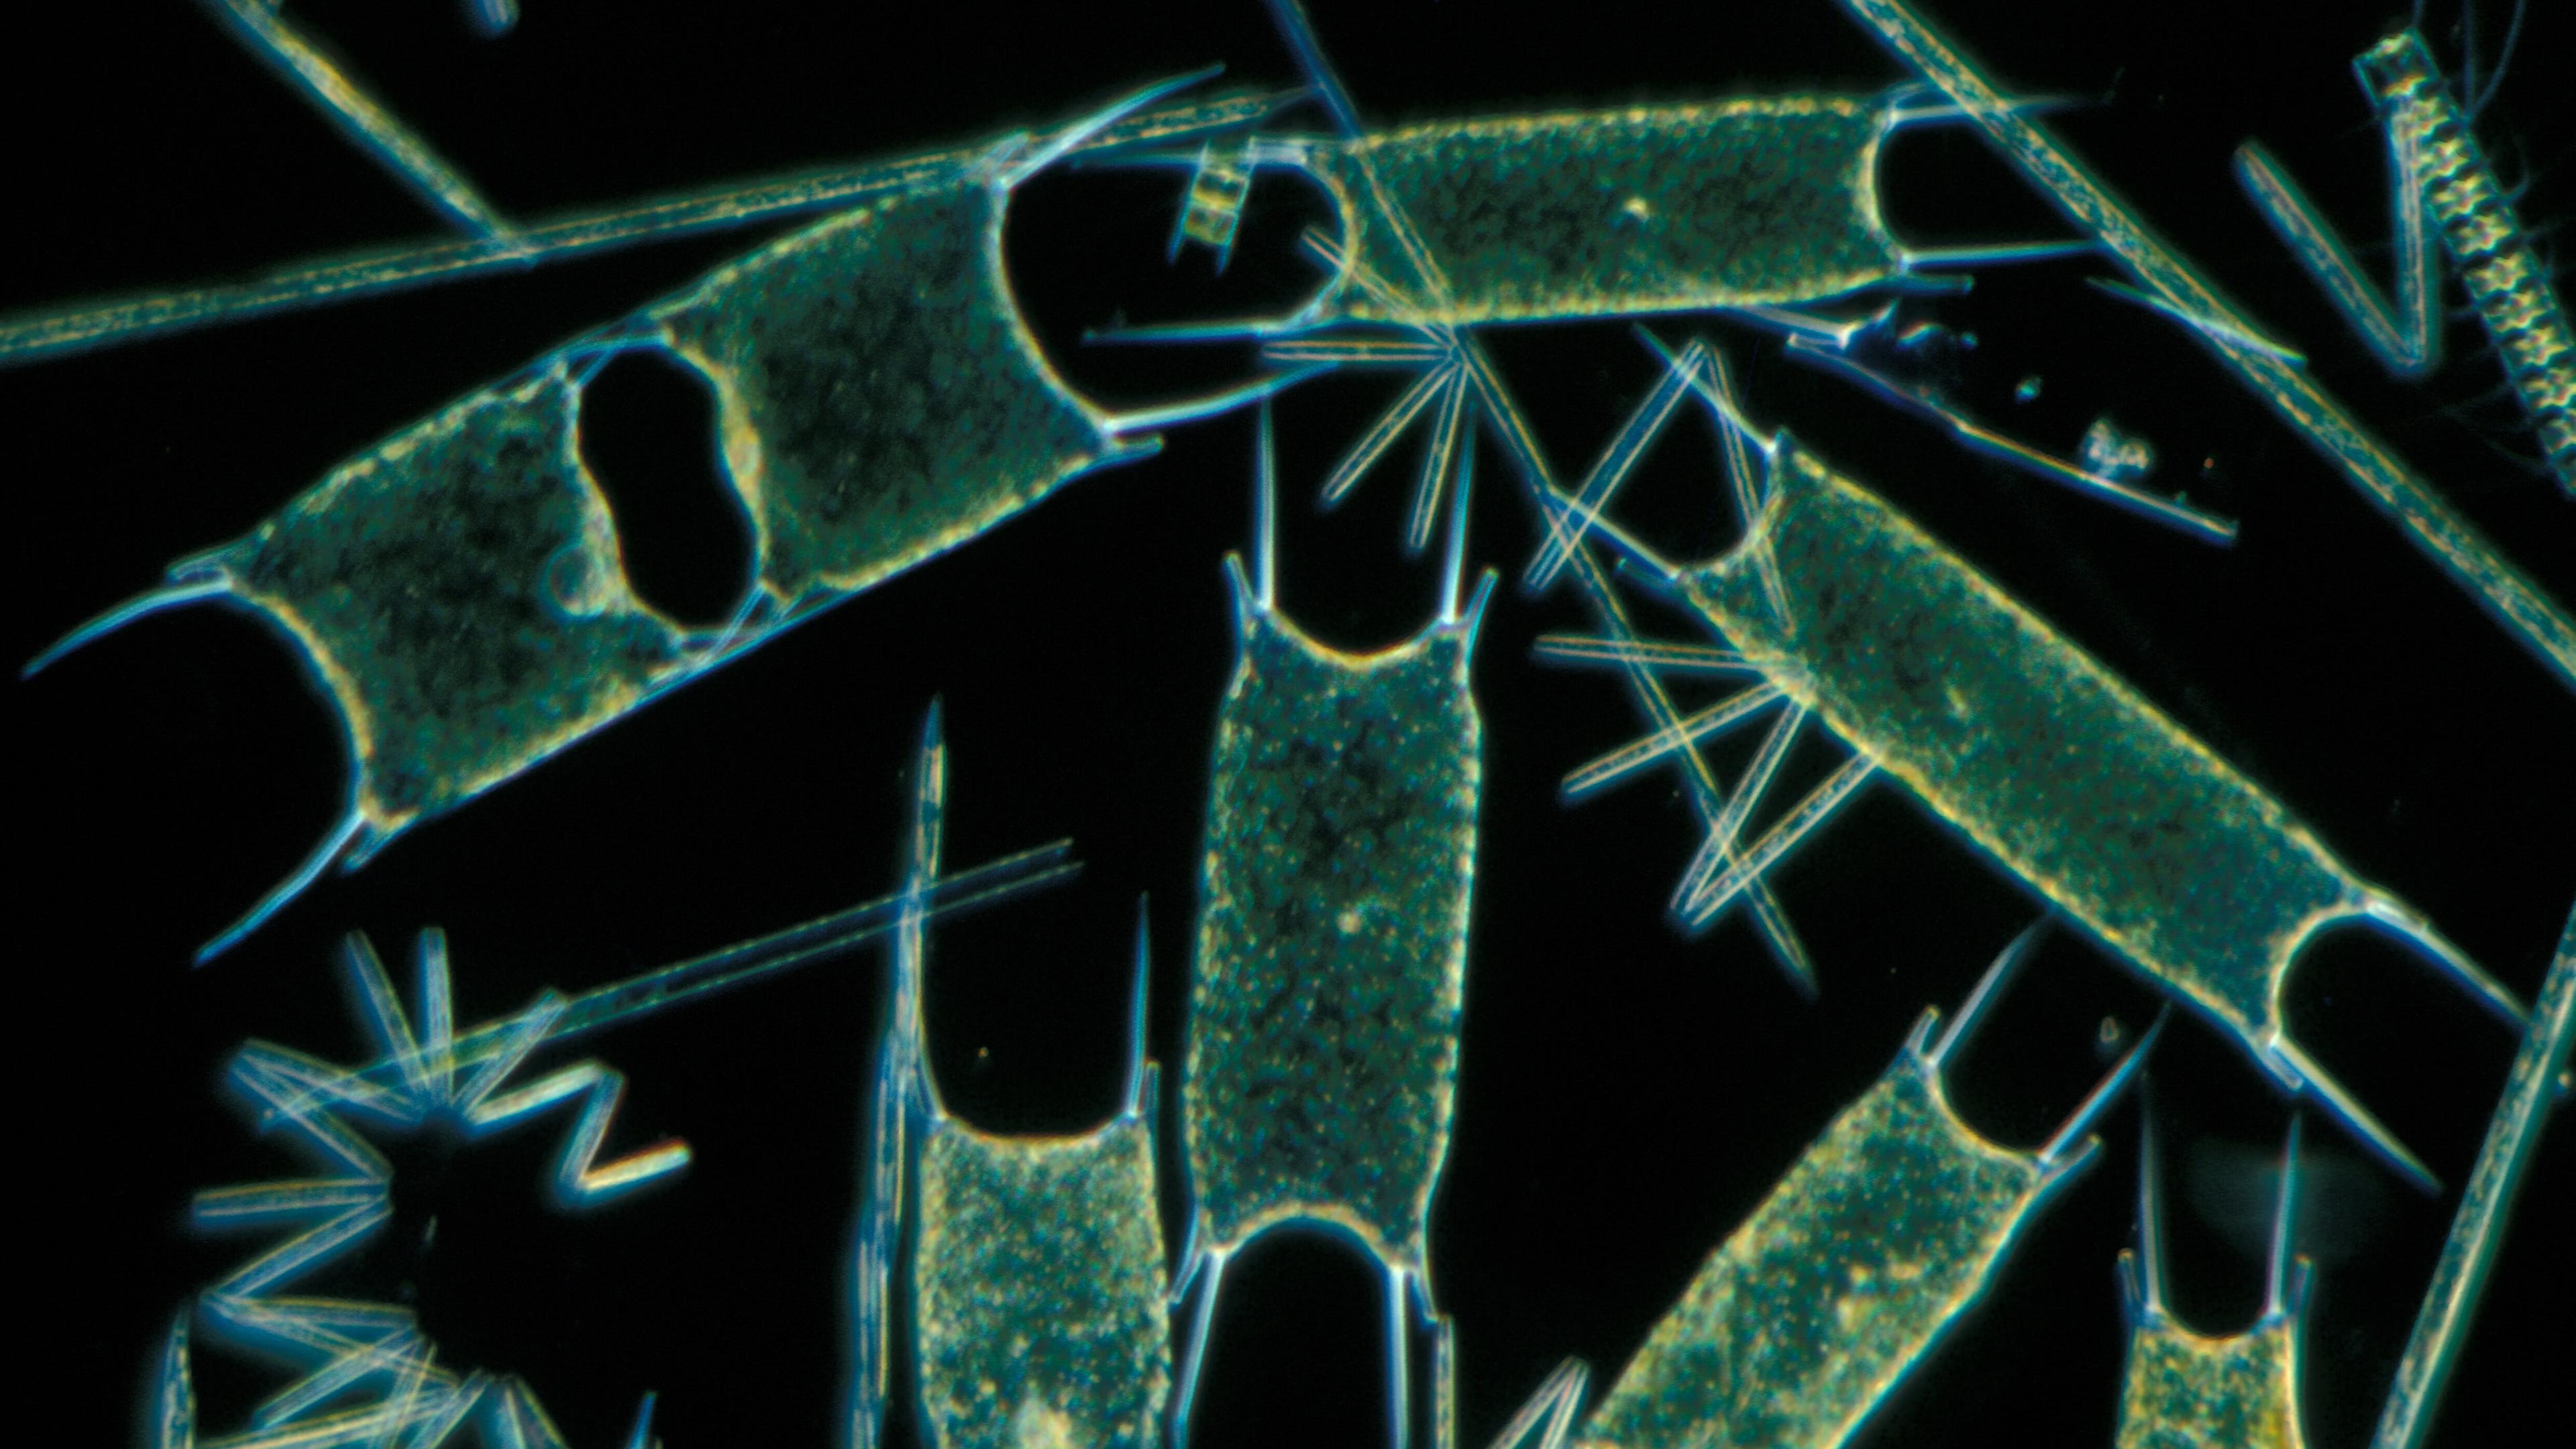 Сколько понадобится фитопланктона